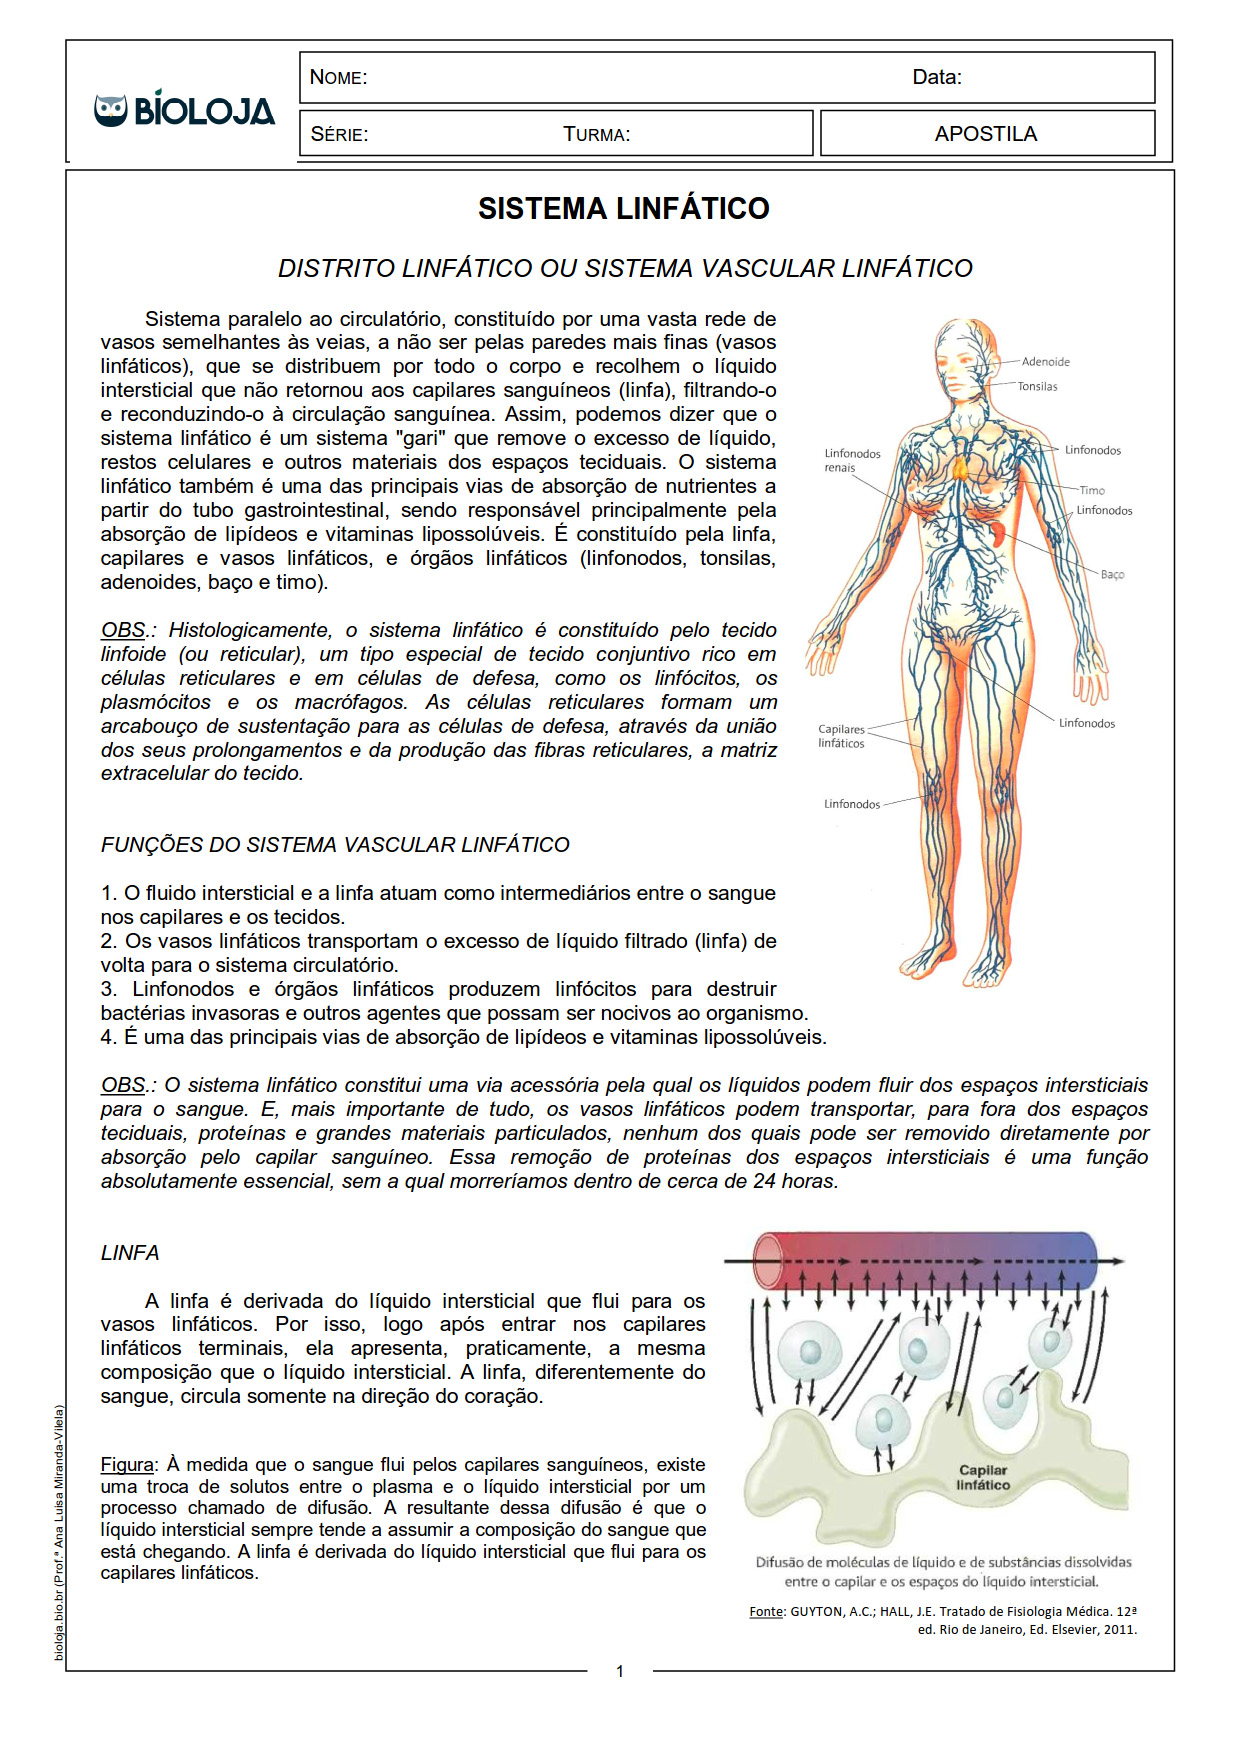 Apostila Fisiologia de órgãos e sistema II: sistemas linfático e imunitário slide 1